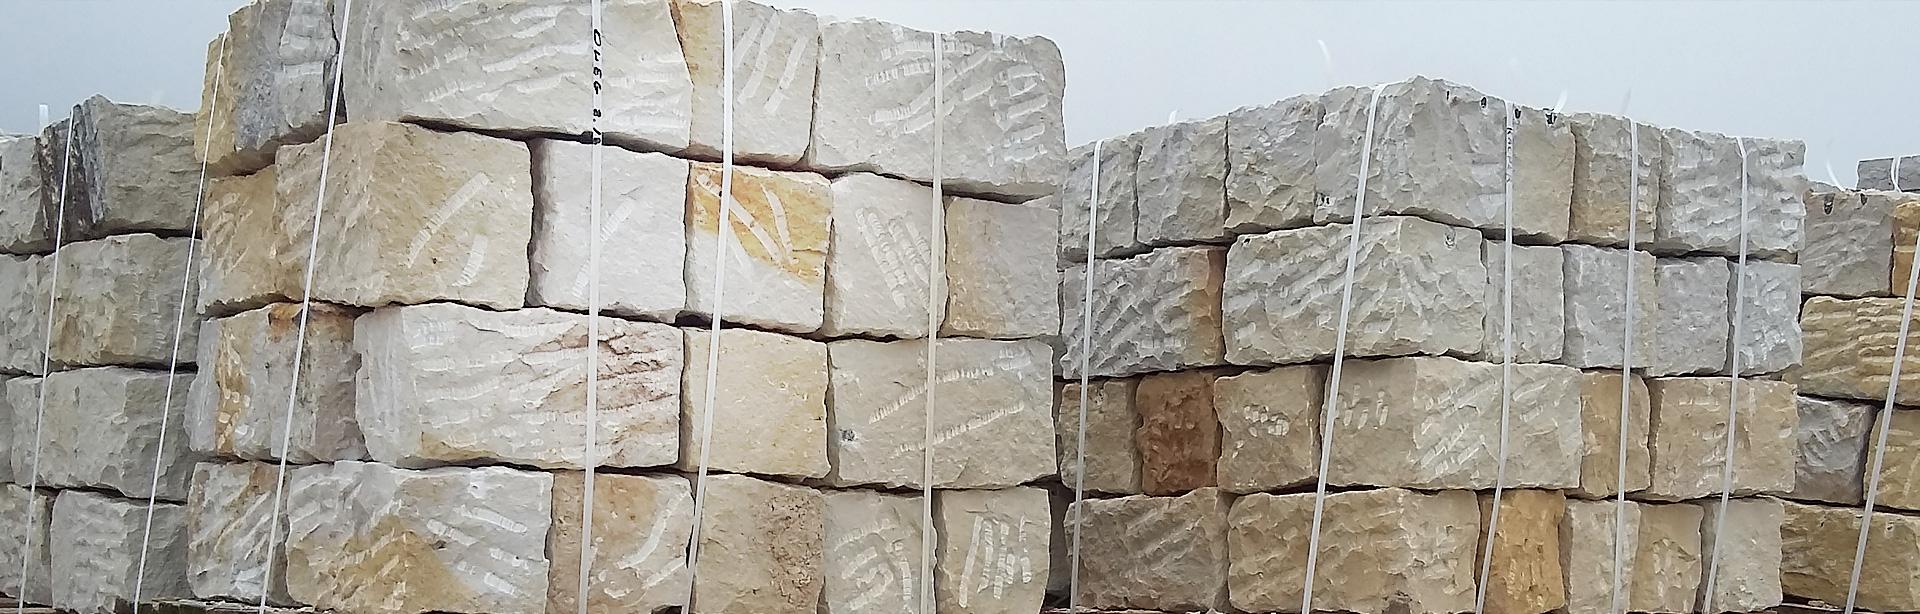 Spakowane bloki kamienne - ZK Kamieniarstwo producent wyrobów kamiennych - Slajd 3